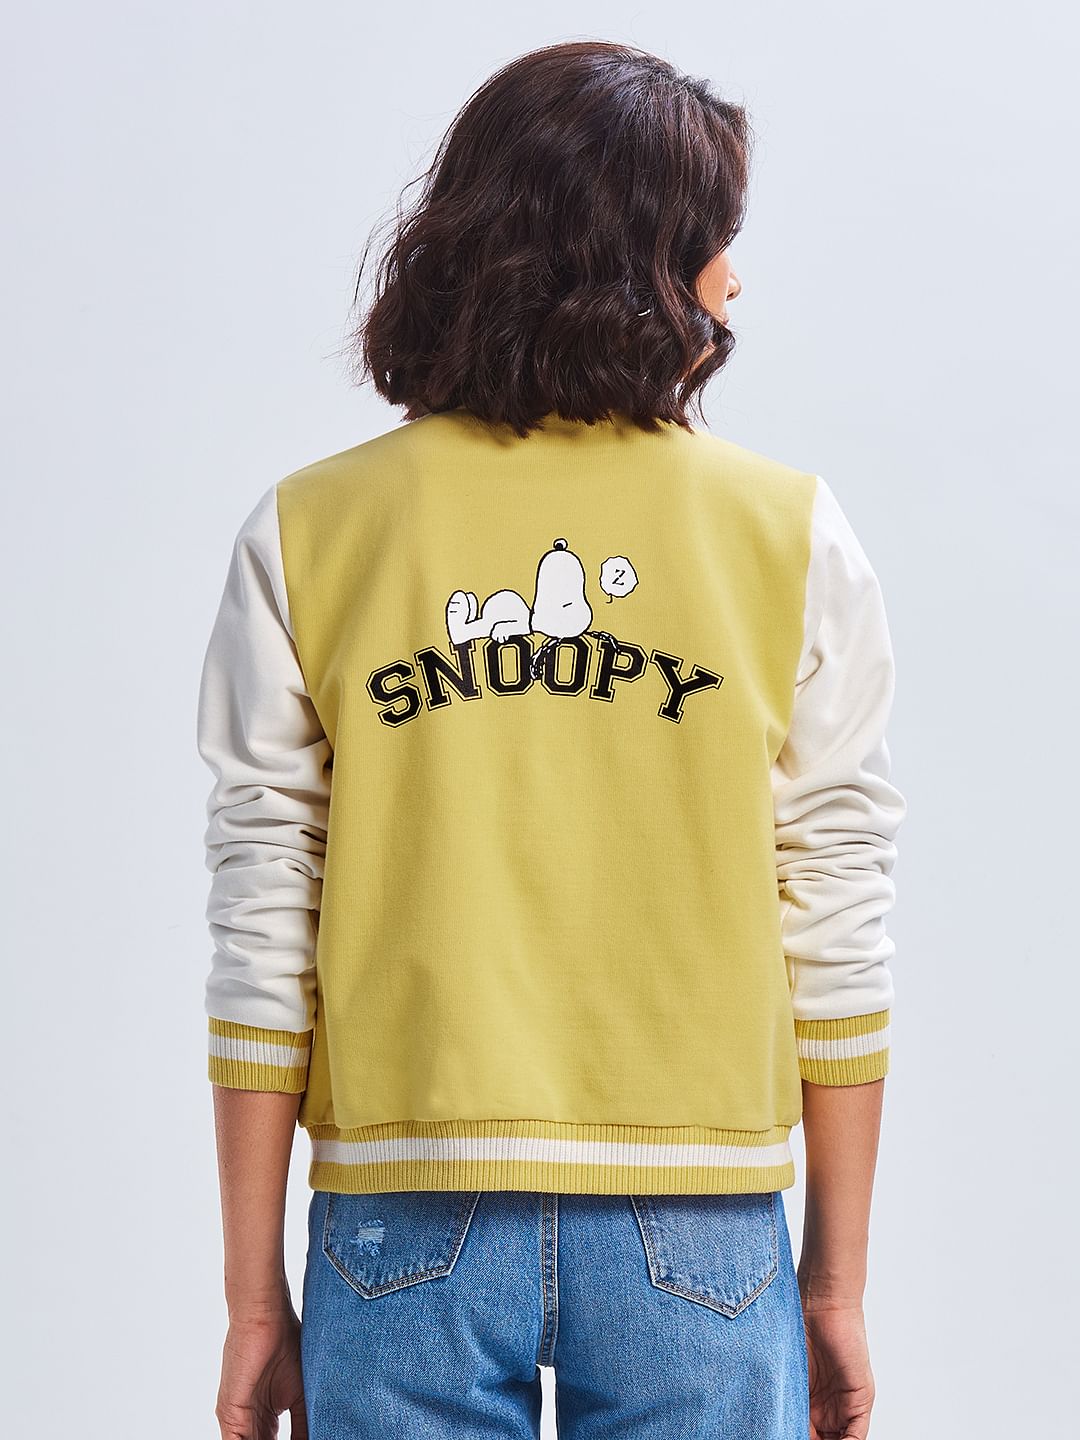 Peanuts: Snoopy Varsity Jacket